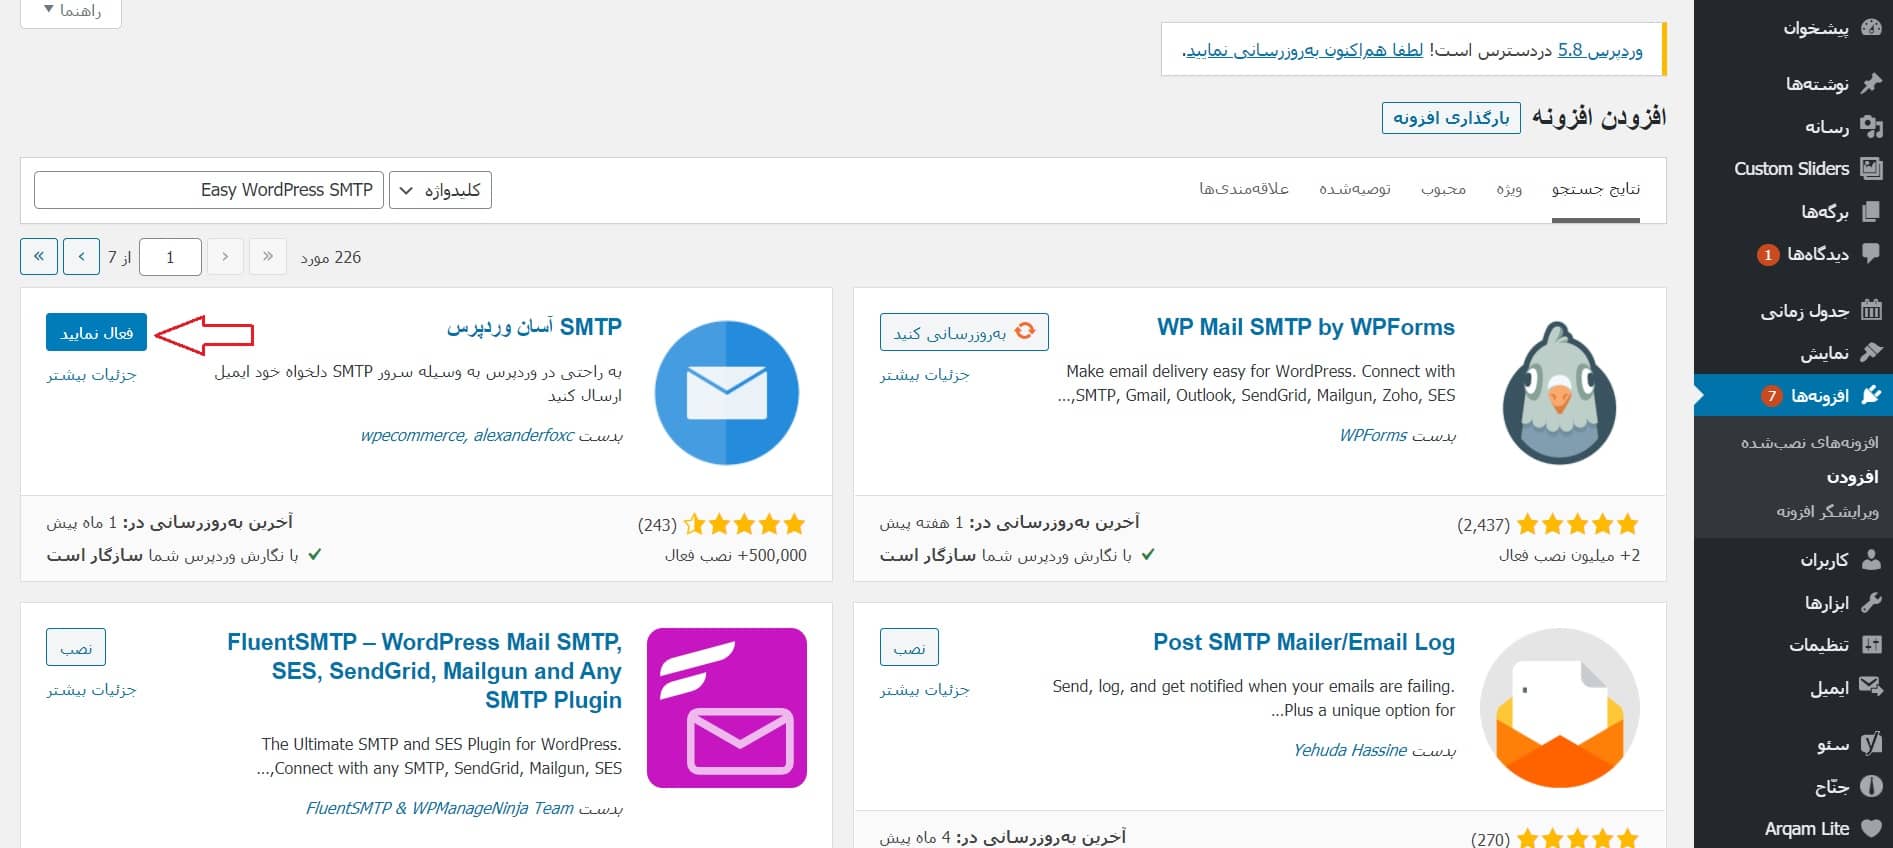 آموزش فعال سازی SMTP در وردپرس